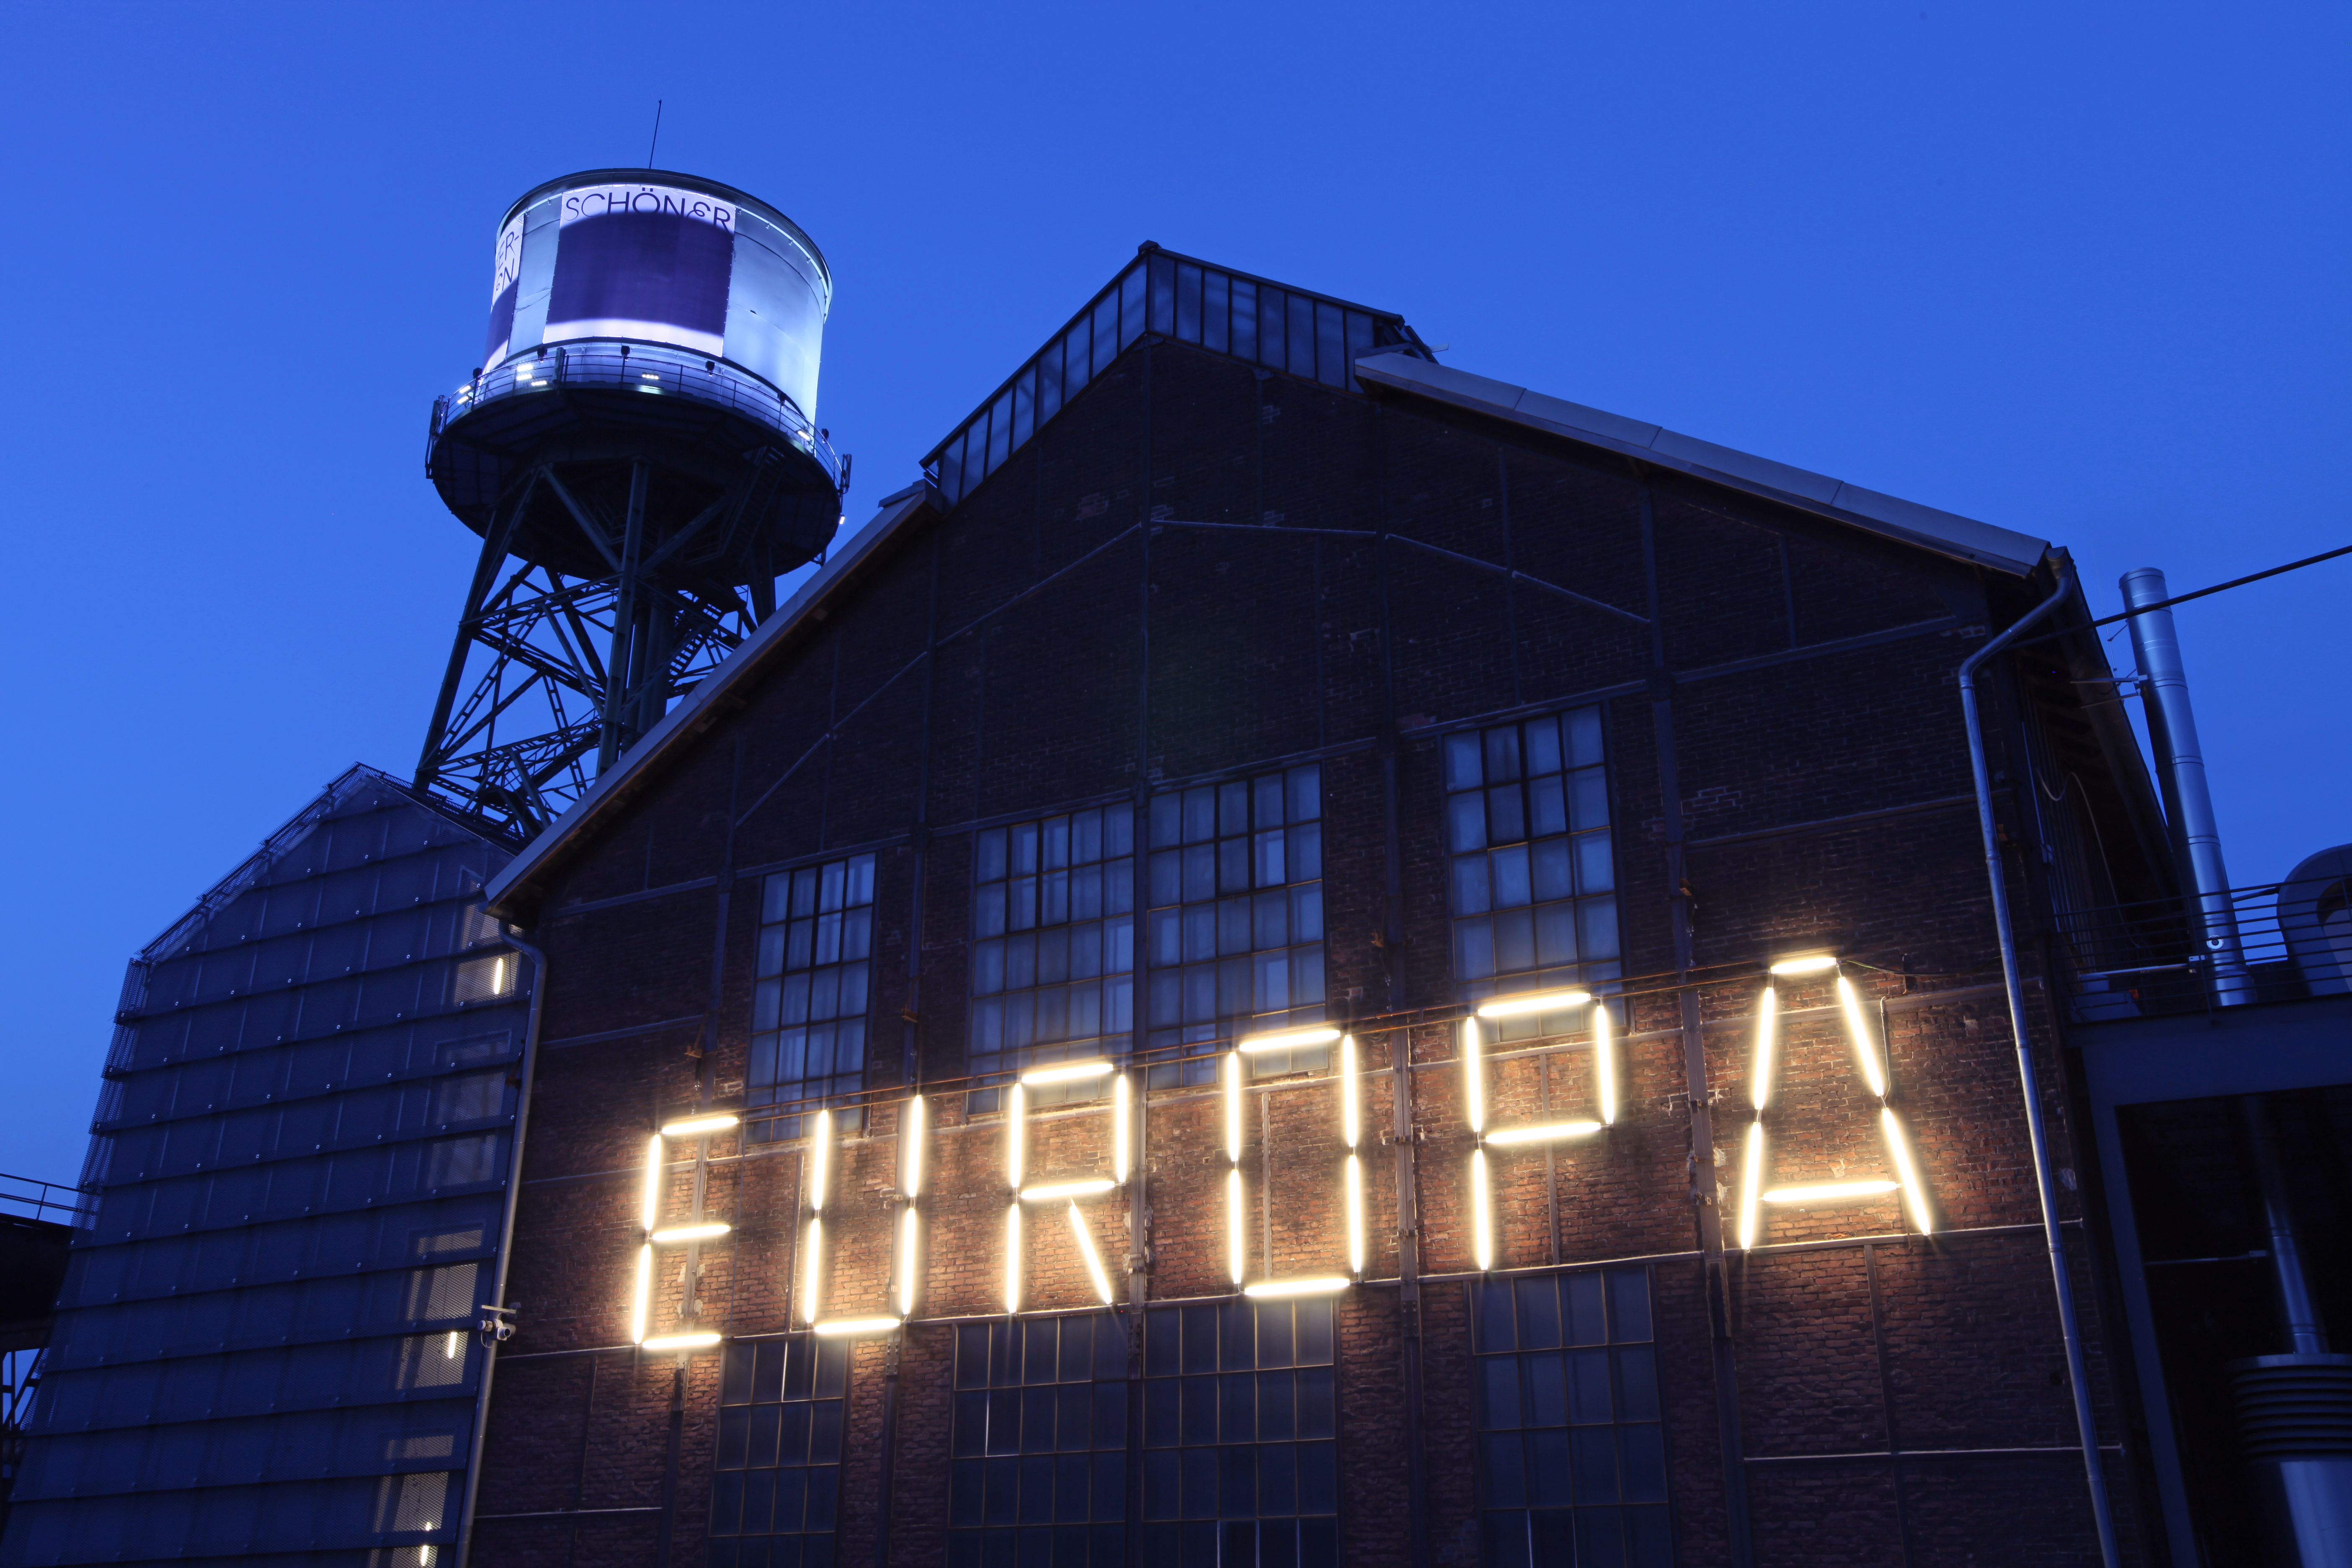  Leuchtschrift "Europa" an der Jahrhunderthalle Bochum. Foto: RVR/Büttner